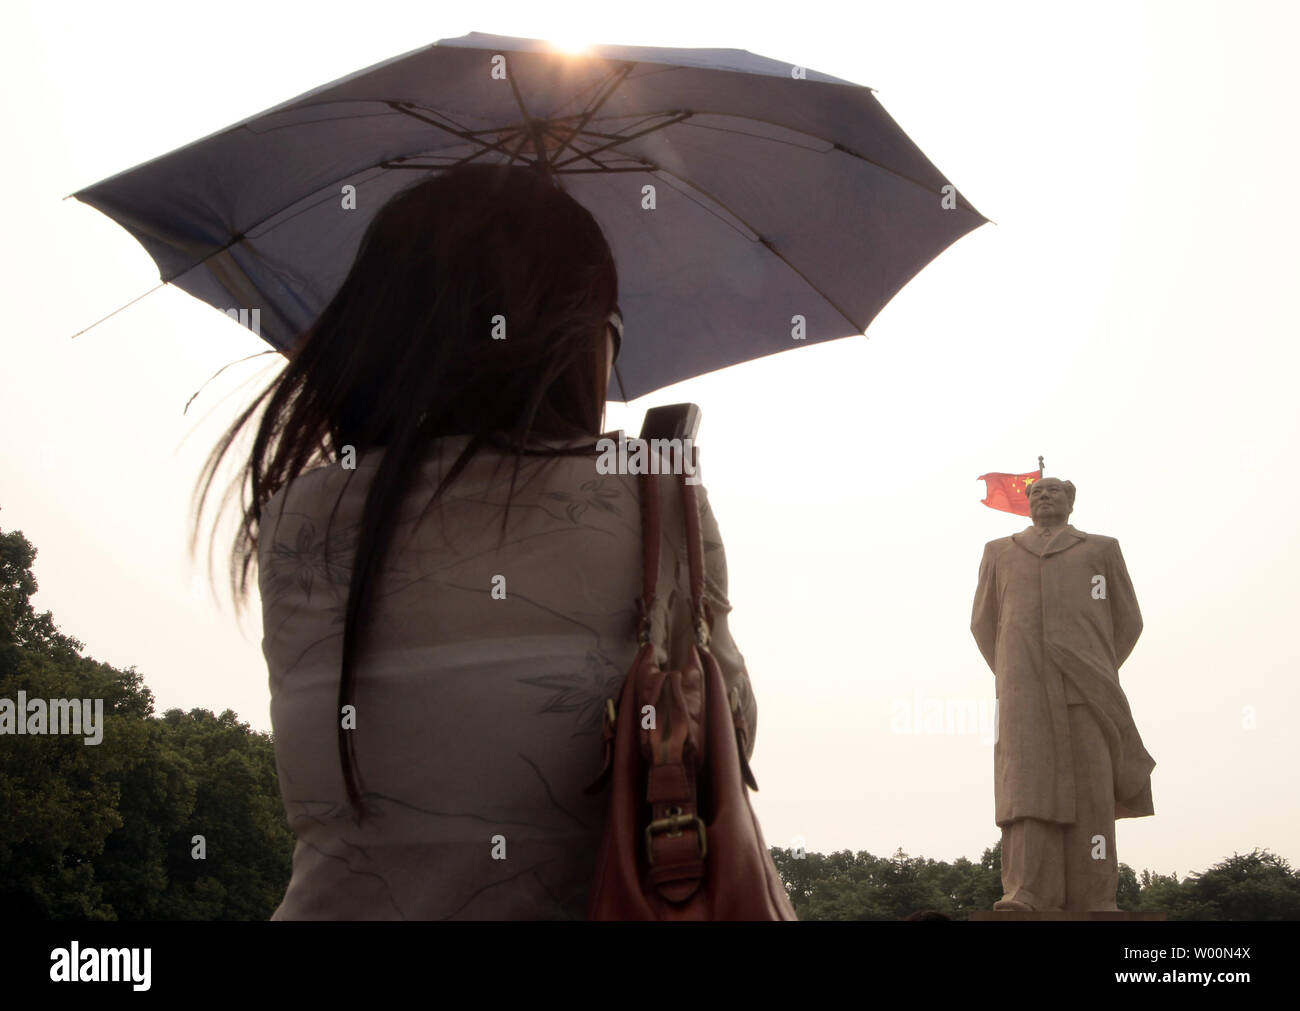 Eine chinesische Frau nimmt einen Snapshot einer gigantischen Statue des ehemaligen Vorsitzenden Mao Zedong vor der Hunan Universität, Changsha, der Hauptstadt der Provinz Hunan, am 12. September 2009. Mao der Kommunistischen Partei Chinas führte zu Sieg gegen die Kuomintang im chinesischen Bürgerkrieg und die PeopleÕs Republik China 1949 gegründet. China wird der 60. Jahrestag am 01. Oktober feiern mit einer großen Militärparade in Peking. UPI/Stephen Rasierer Stockfoto